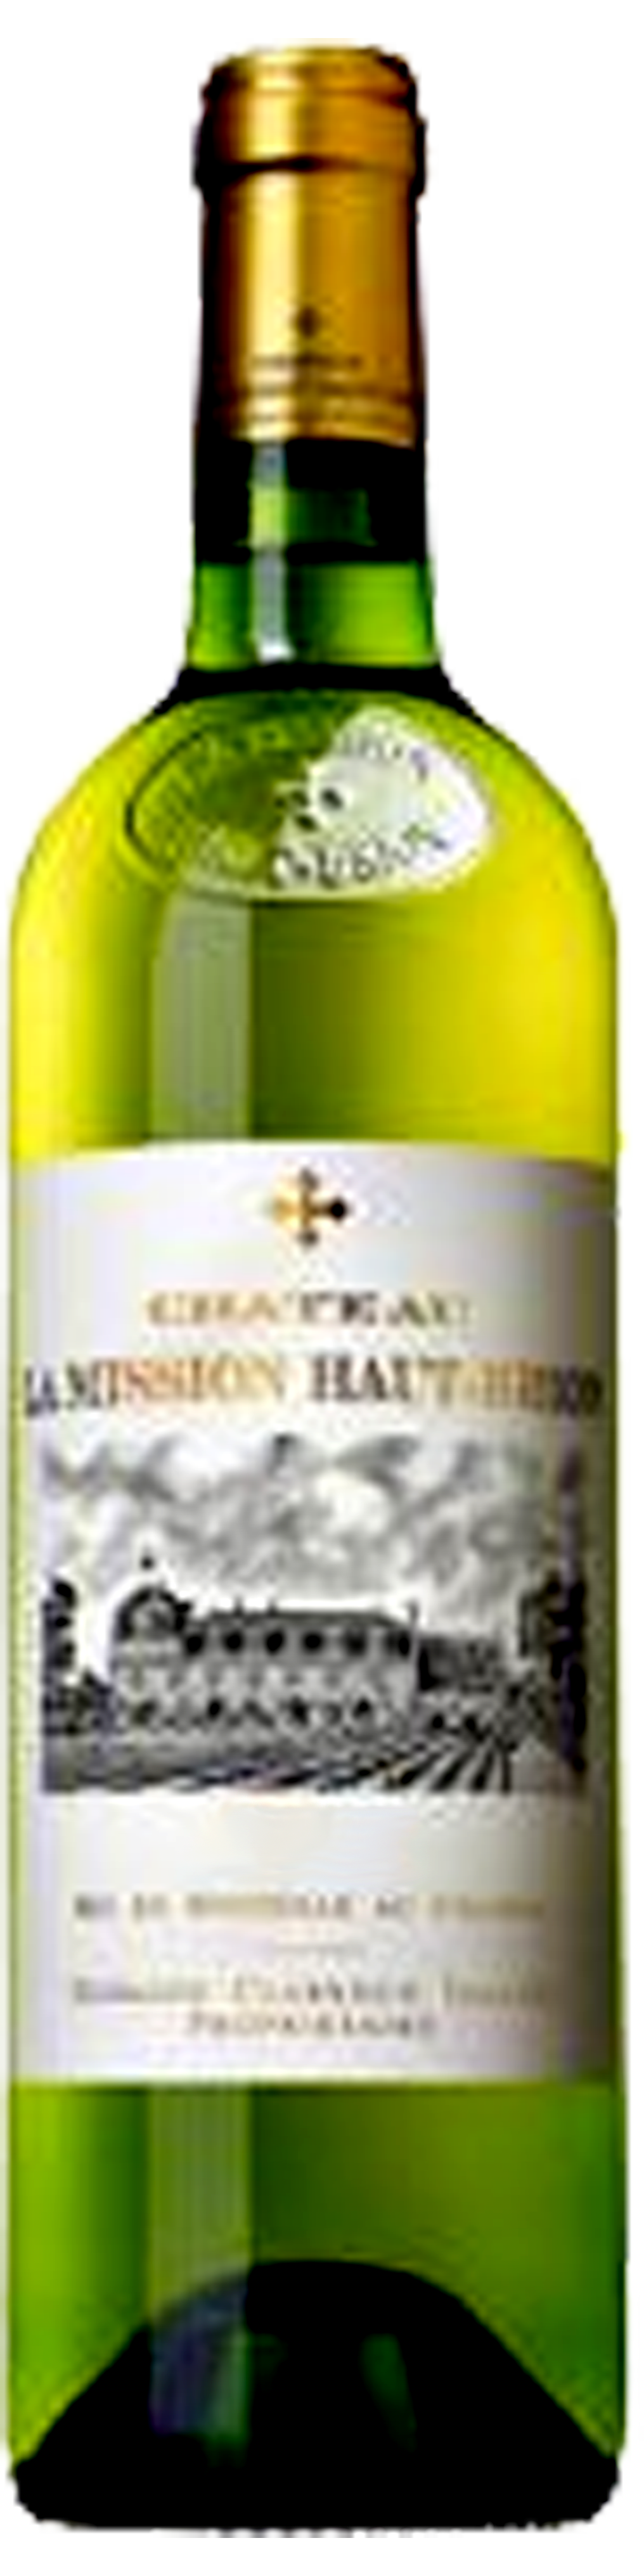 Bottle shot of 2011 Château La Mission Haut Brion Blanc